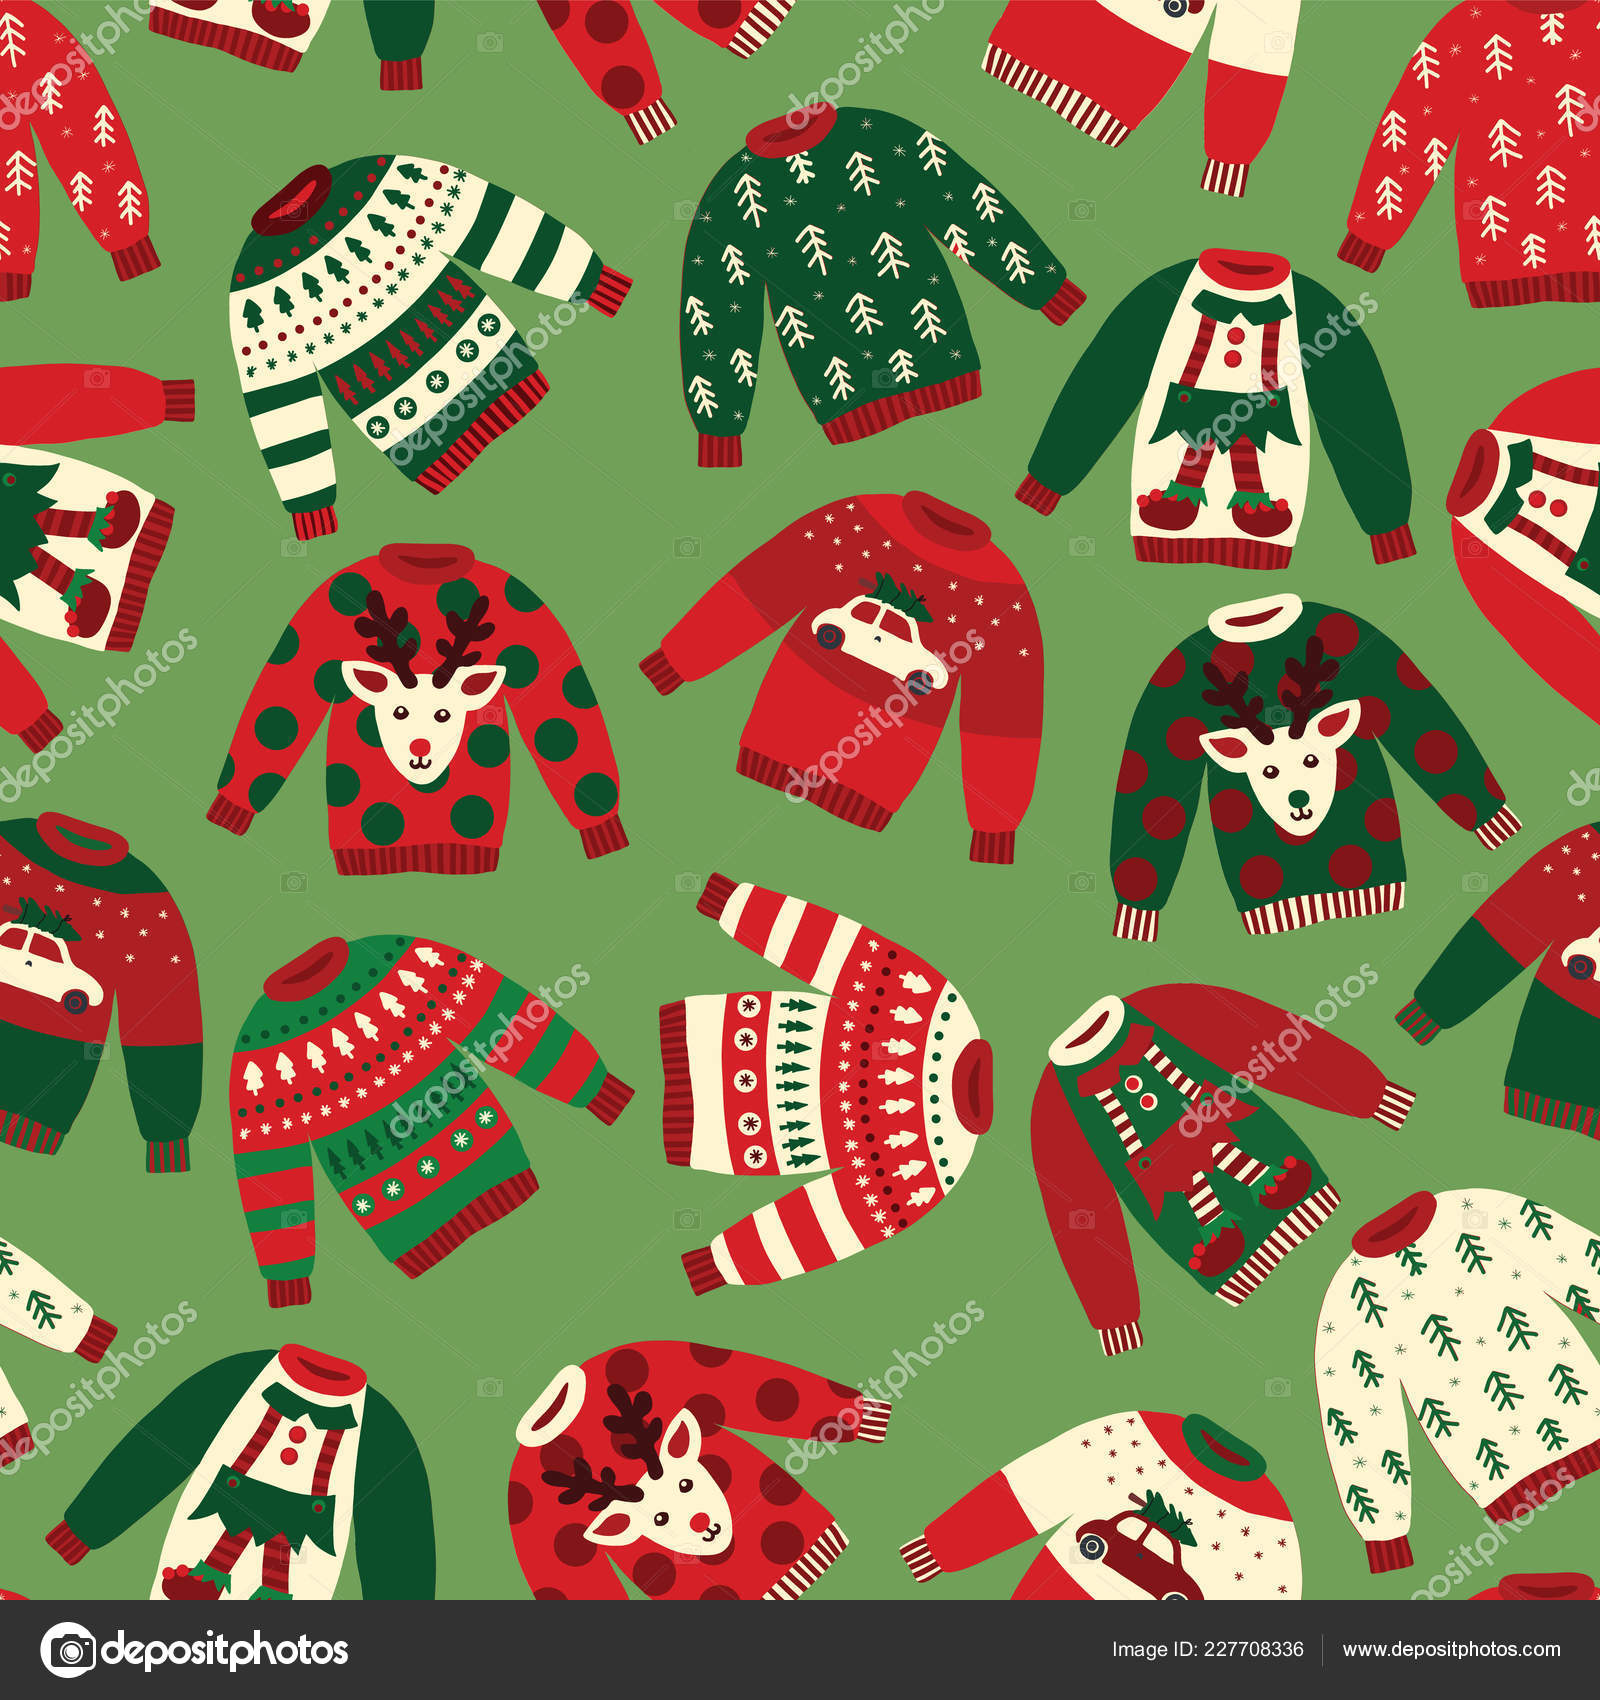 Hình ảnh áo len Giáng sinh xấu xí đã trở thành một biểu tượng cổ điển trong mùa lễ hội này. Và giờ đây, bạn có thể tạo cho mình một bộ sưu tập mẫu áo len xấu xí vô cùng hài hước để ăn mừng Giáng sinh với những chiếc áo khó đỡ và đầy màu sắc này.